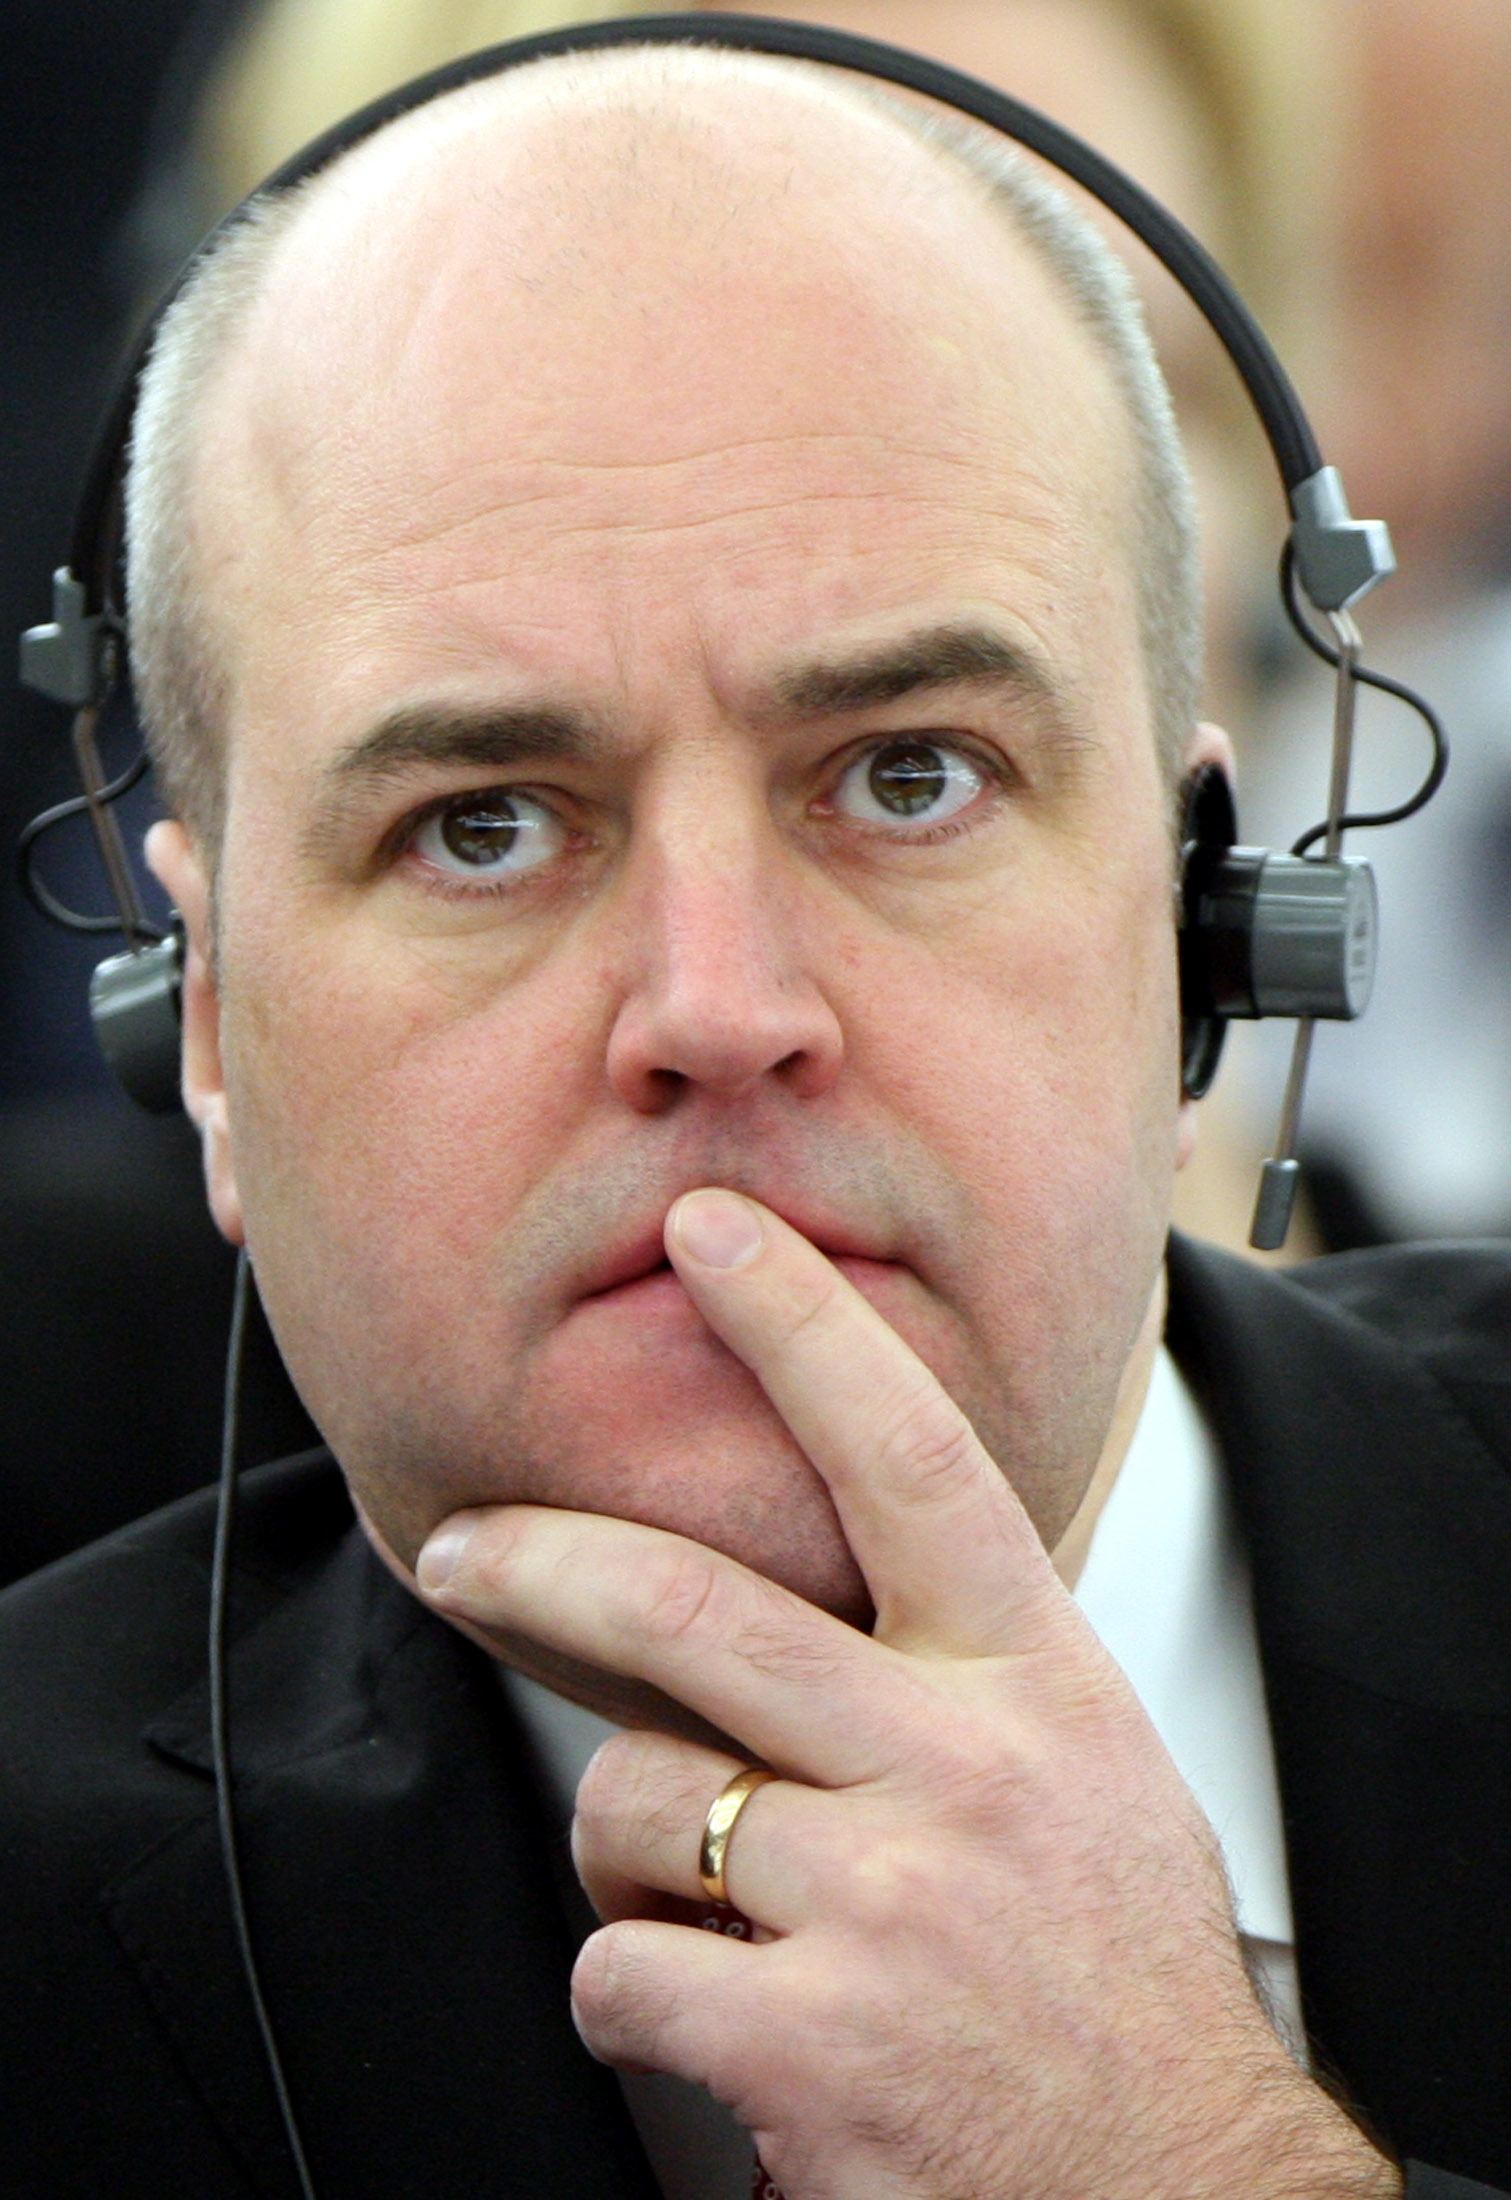 Riksdagsvalet 2010, Fredrik Reinfeldt